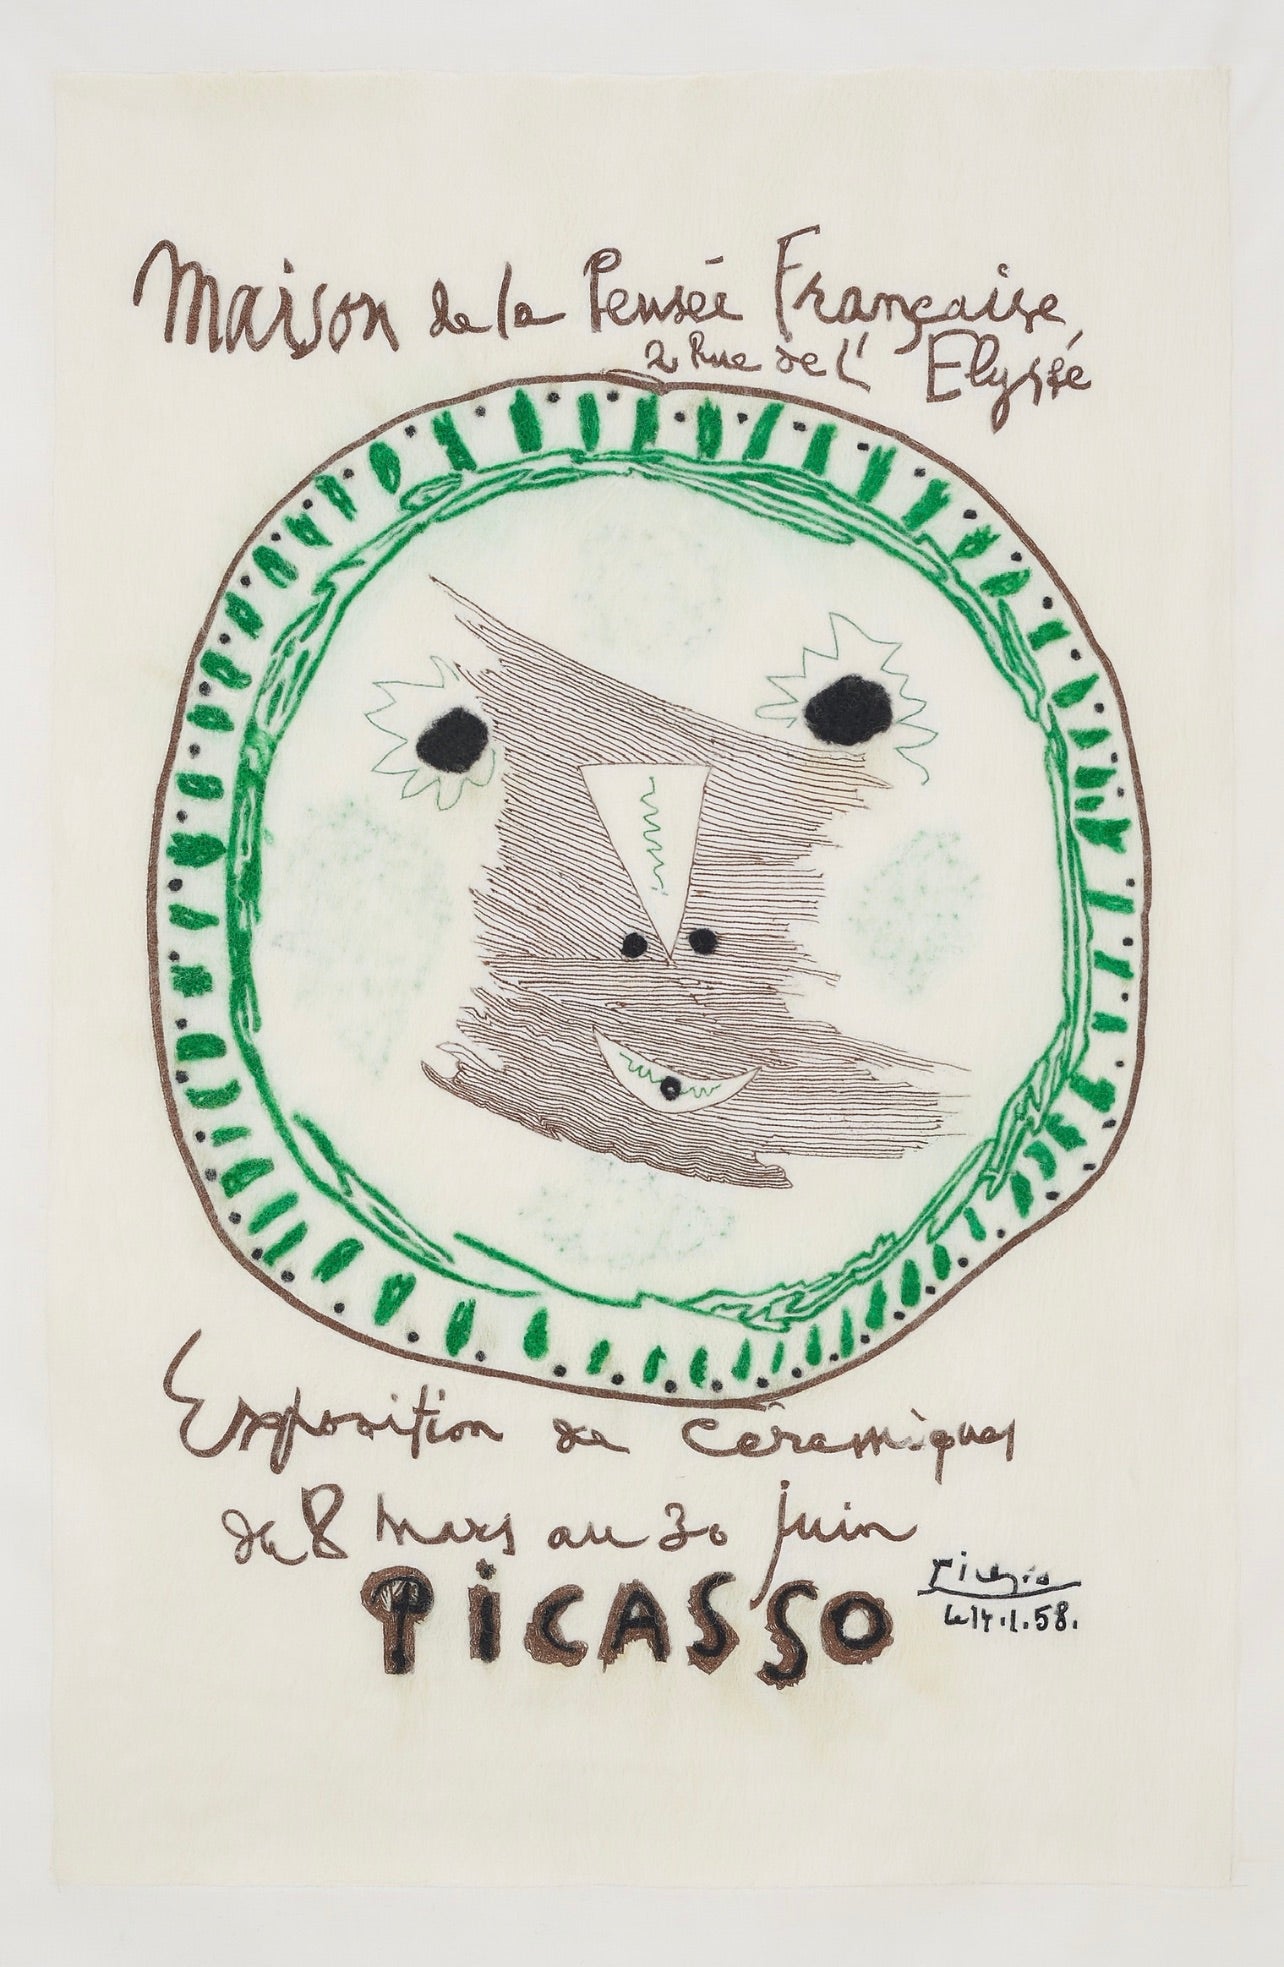 Pablo Picasso, Maison de la Pensee Francaise (1958), Available for Sale